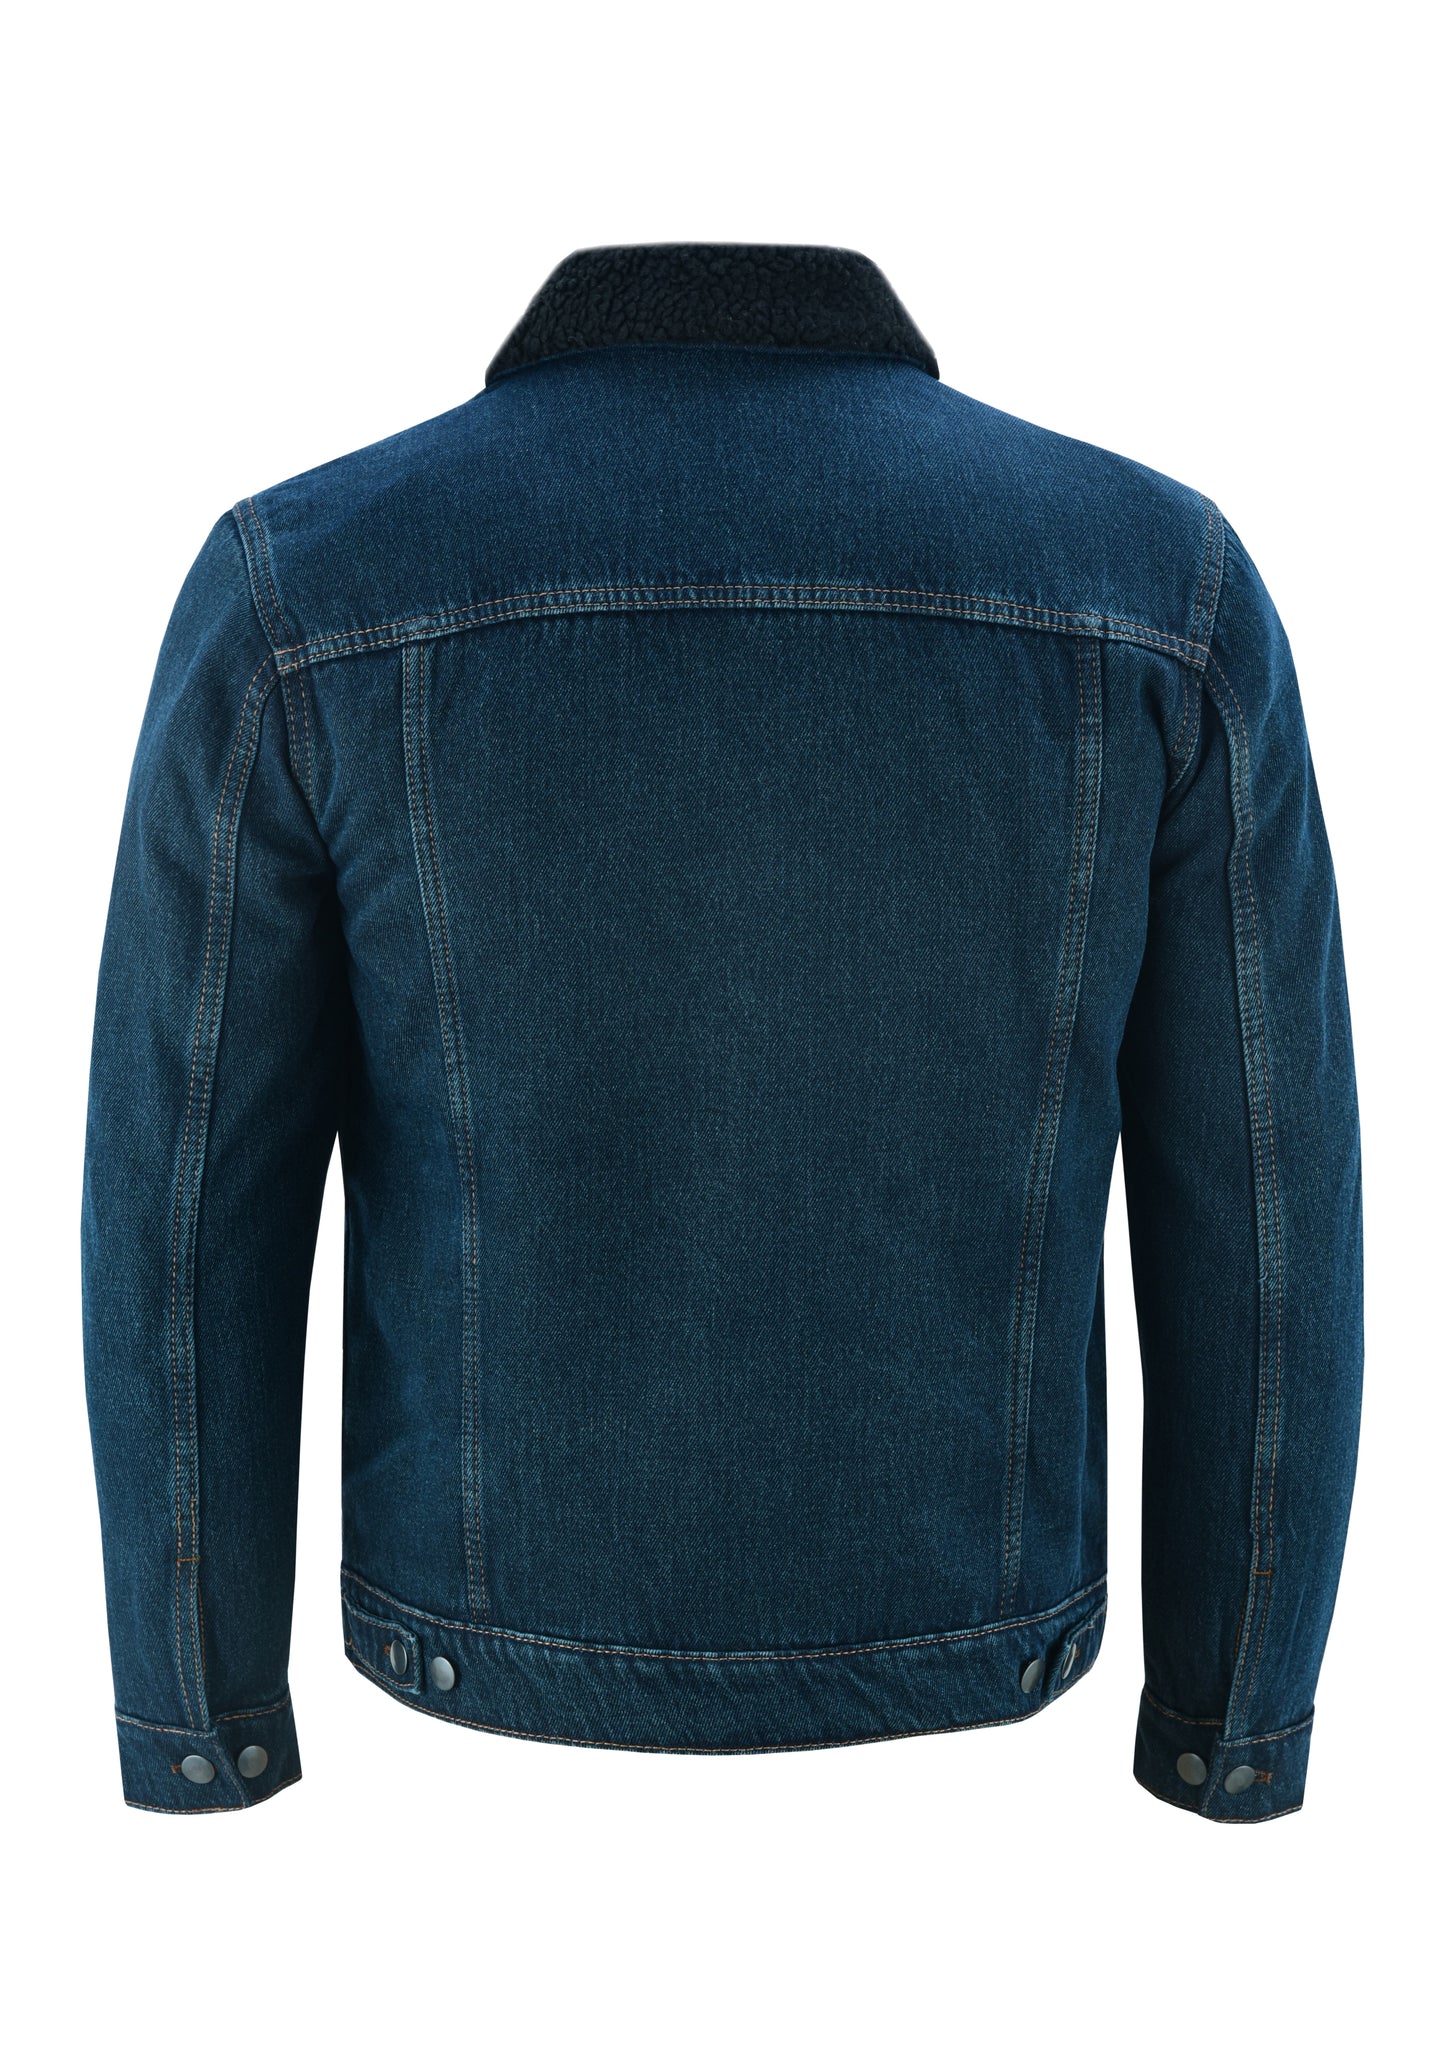 KS104 Dirty Blue Denim Fur Jackets Hip-hop Style  Kanvos Sports